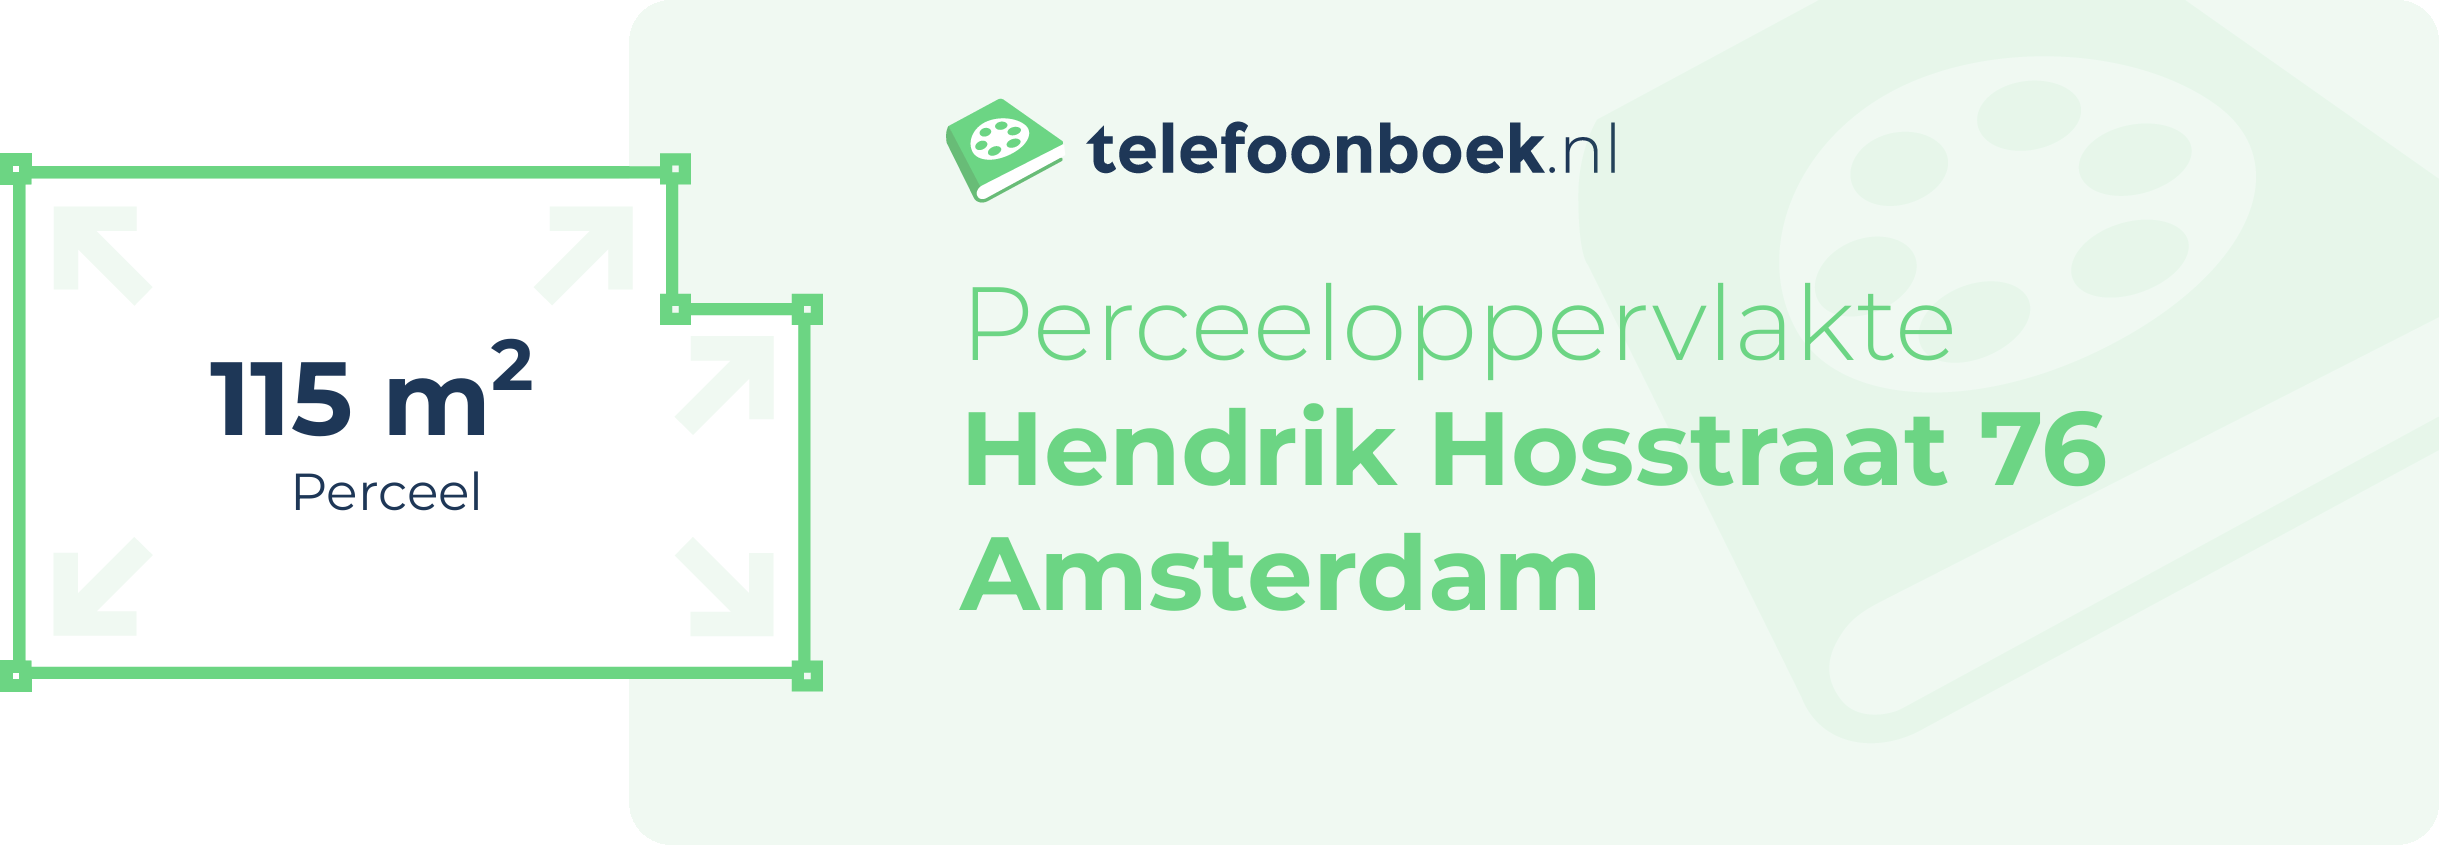 Perceeloppervlakte Hendrik Hosstraat 76 Amsterdam